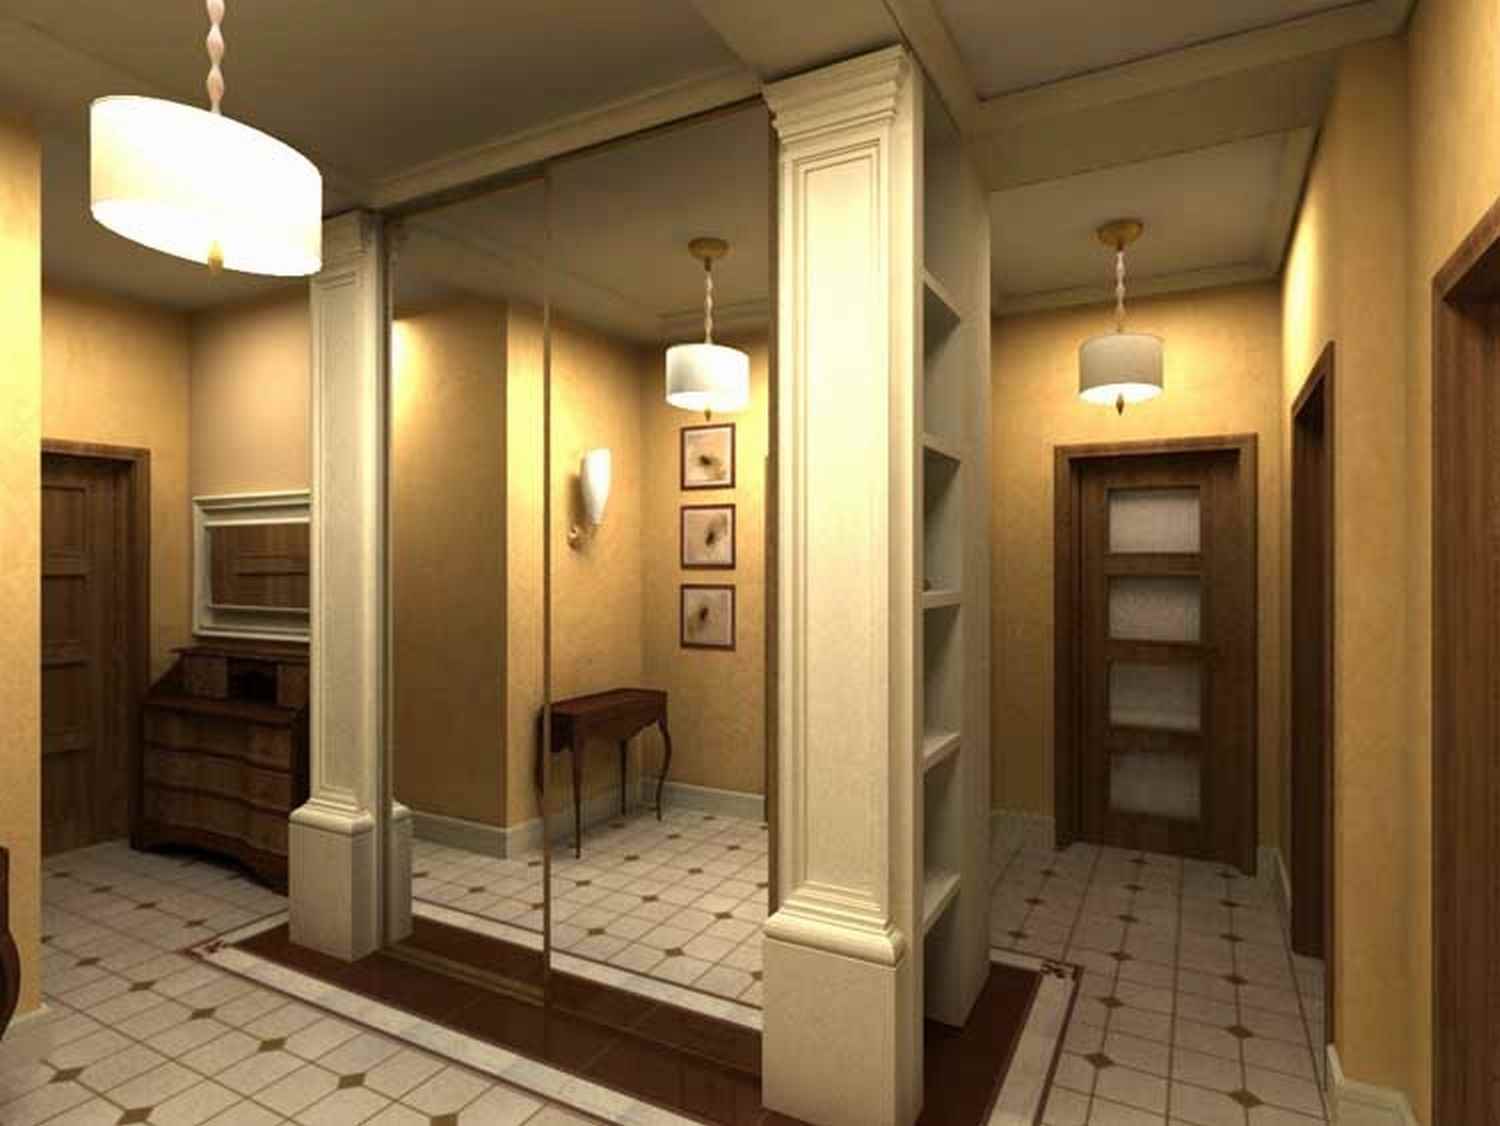 version de l'intérieur inhabituel du couloir avec des miroirs